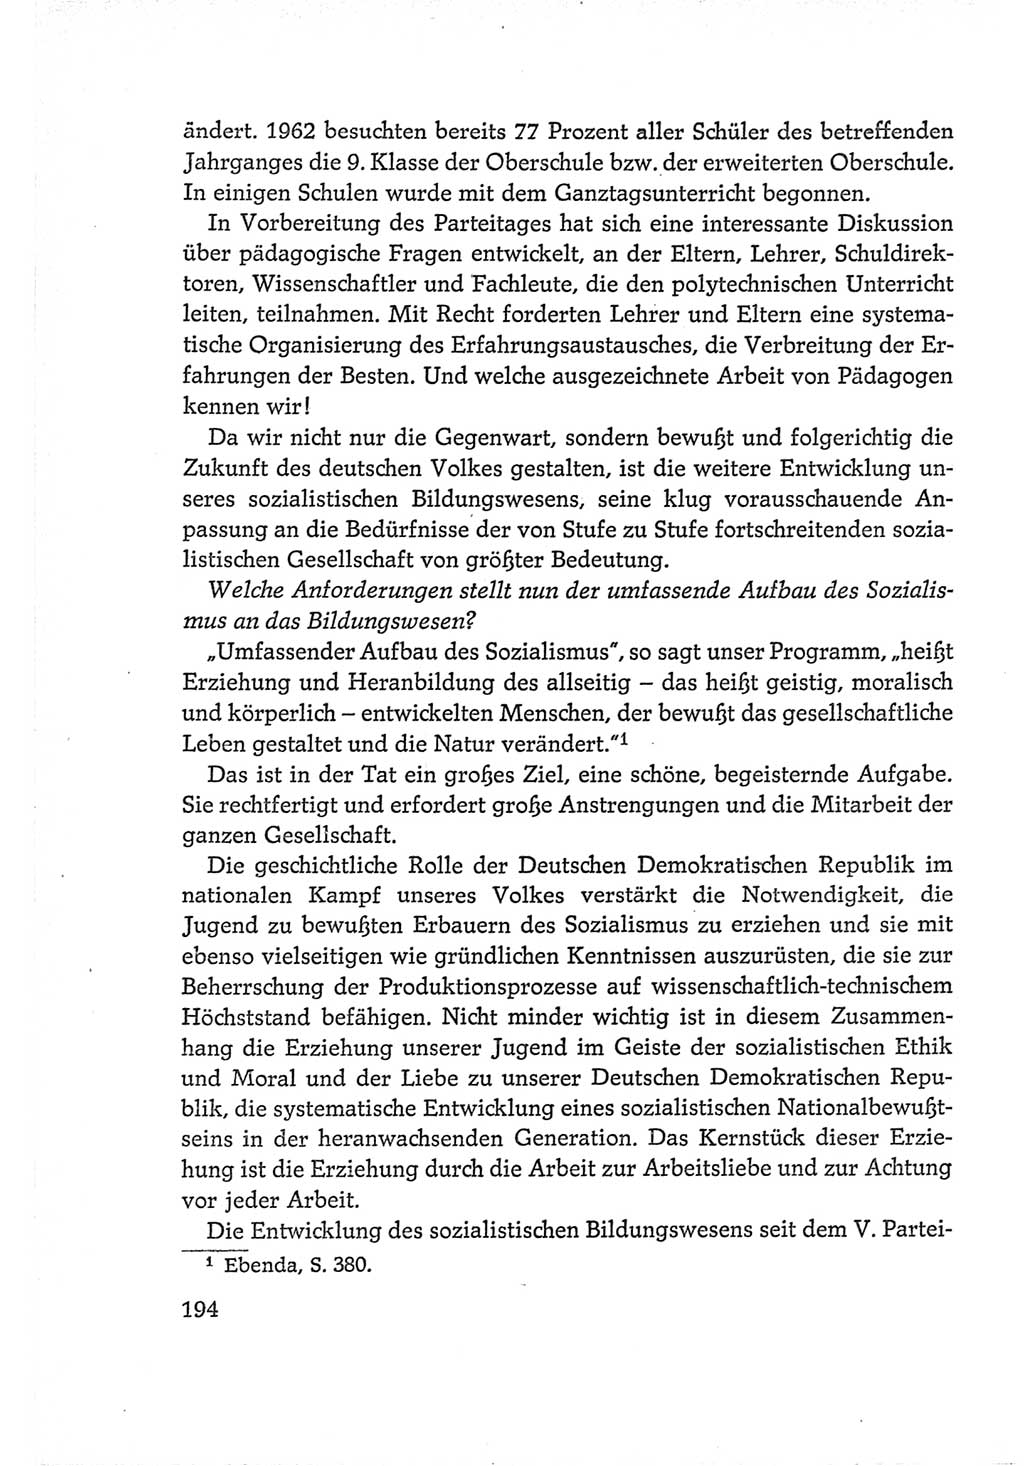 Protokoll der Verhandlungen des Ⅵ. Parteitages der Sozialistischen Einheitspartei Deutschlands (SED) [Deutsche Demokratische Republik (DDR)] 1963, Band Ⅰ, Seite 194 (Prot. Verh. Ⅵ. PT SED DDR 1963, Bd. Ⅰ, S. 194)